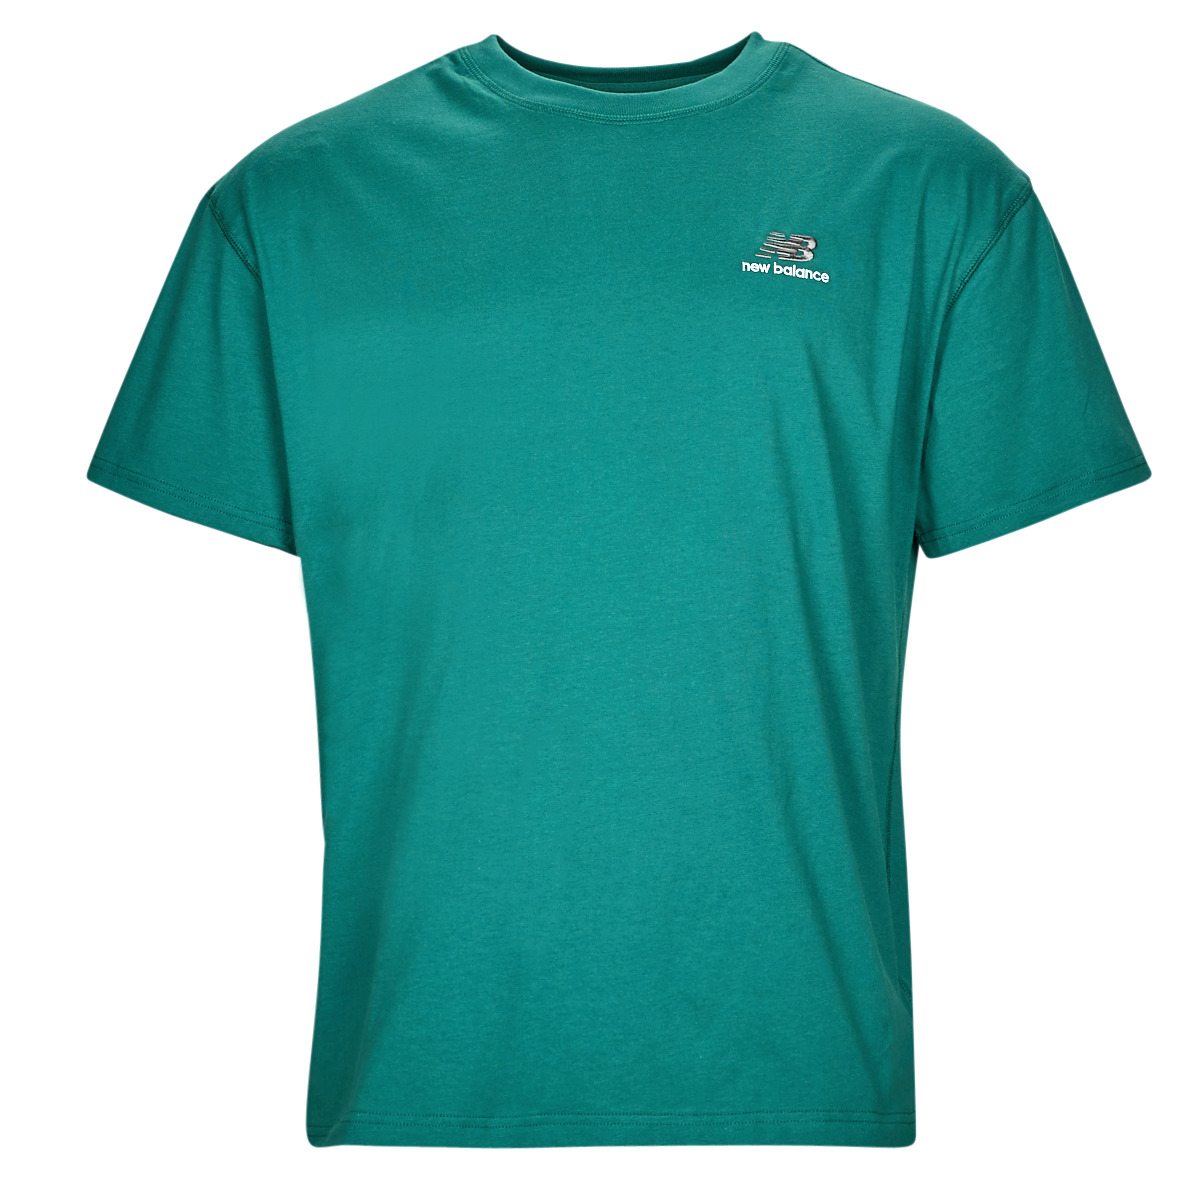 New Balance  Uni-ssentials Cotton T-Shirt  Trička s krátkým rukávem Zelená